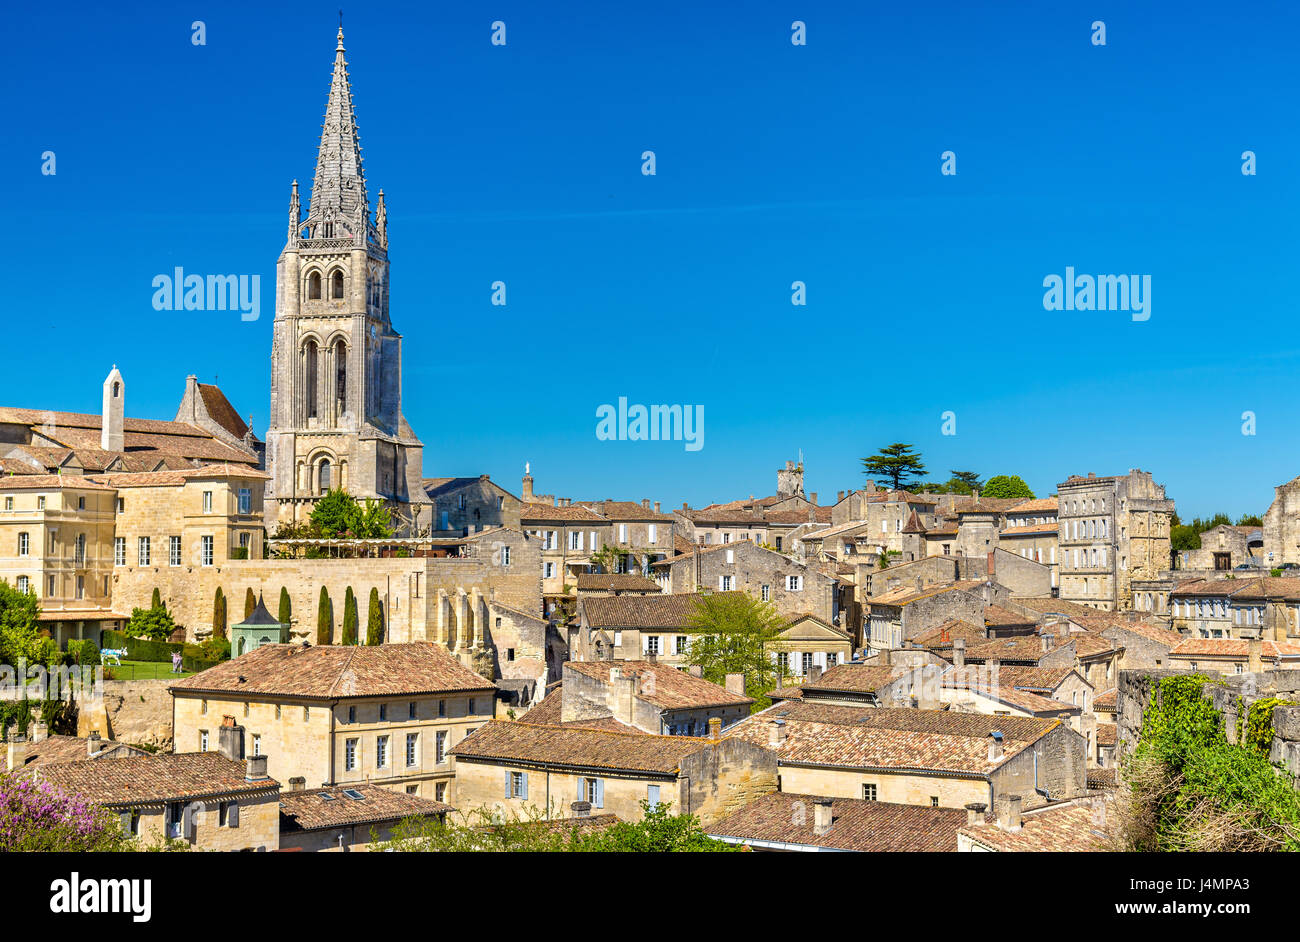 Stadtbild der Stadt Saint-Emilion, ein UNESCO-Weltkulturerbe in Frankreich Stockfoto